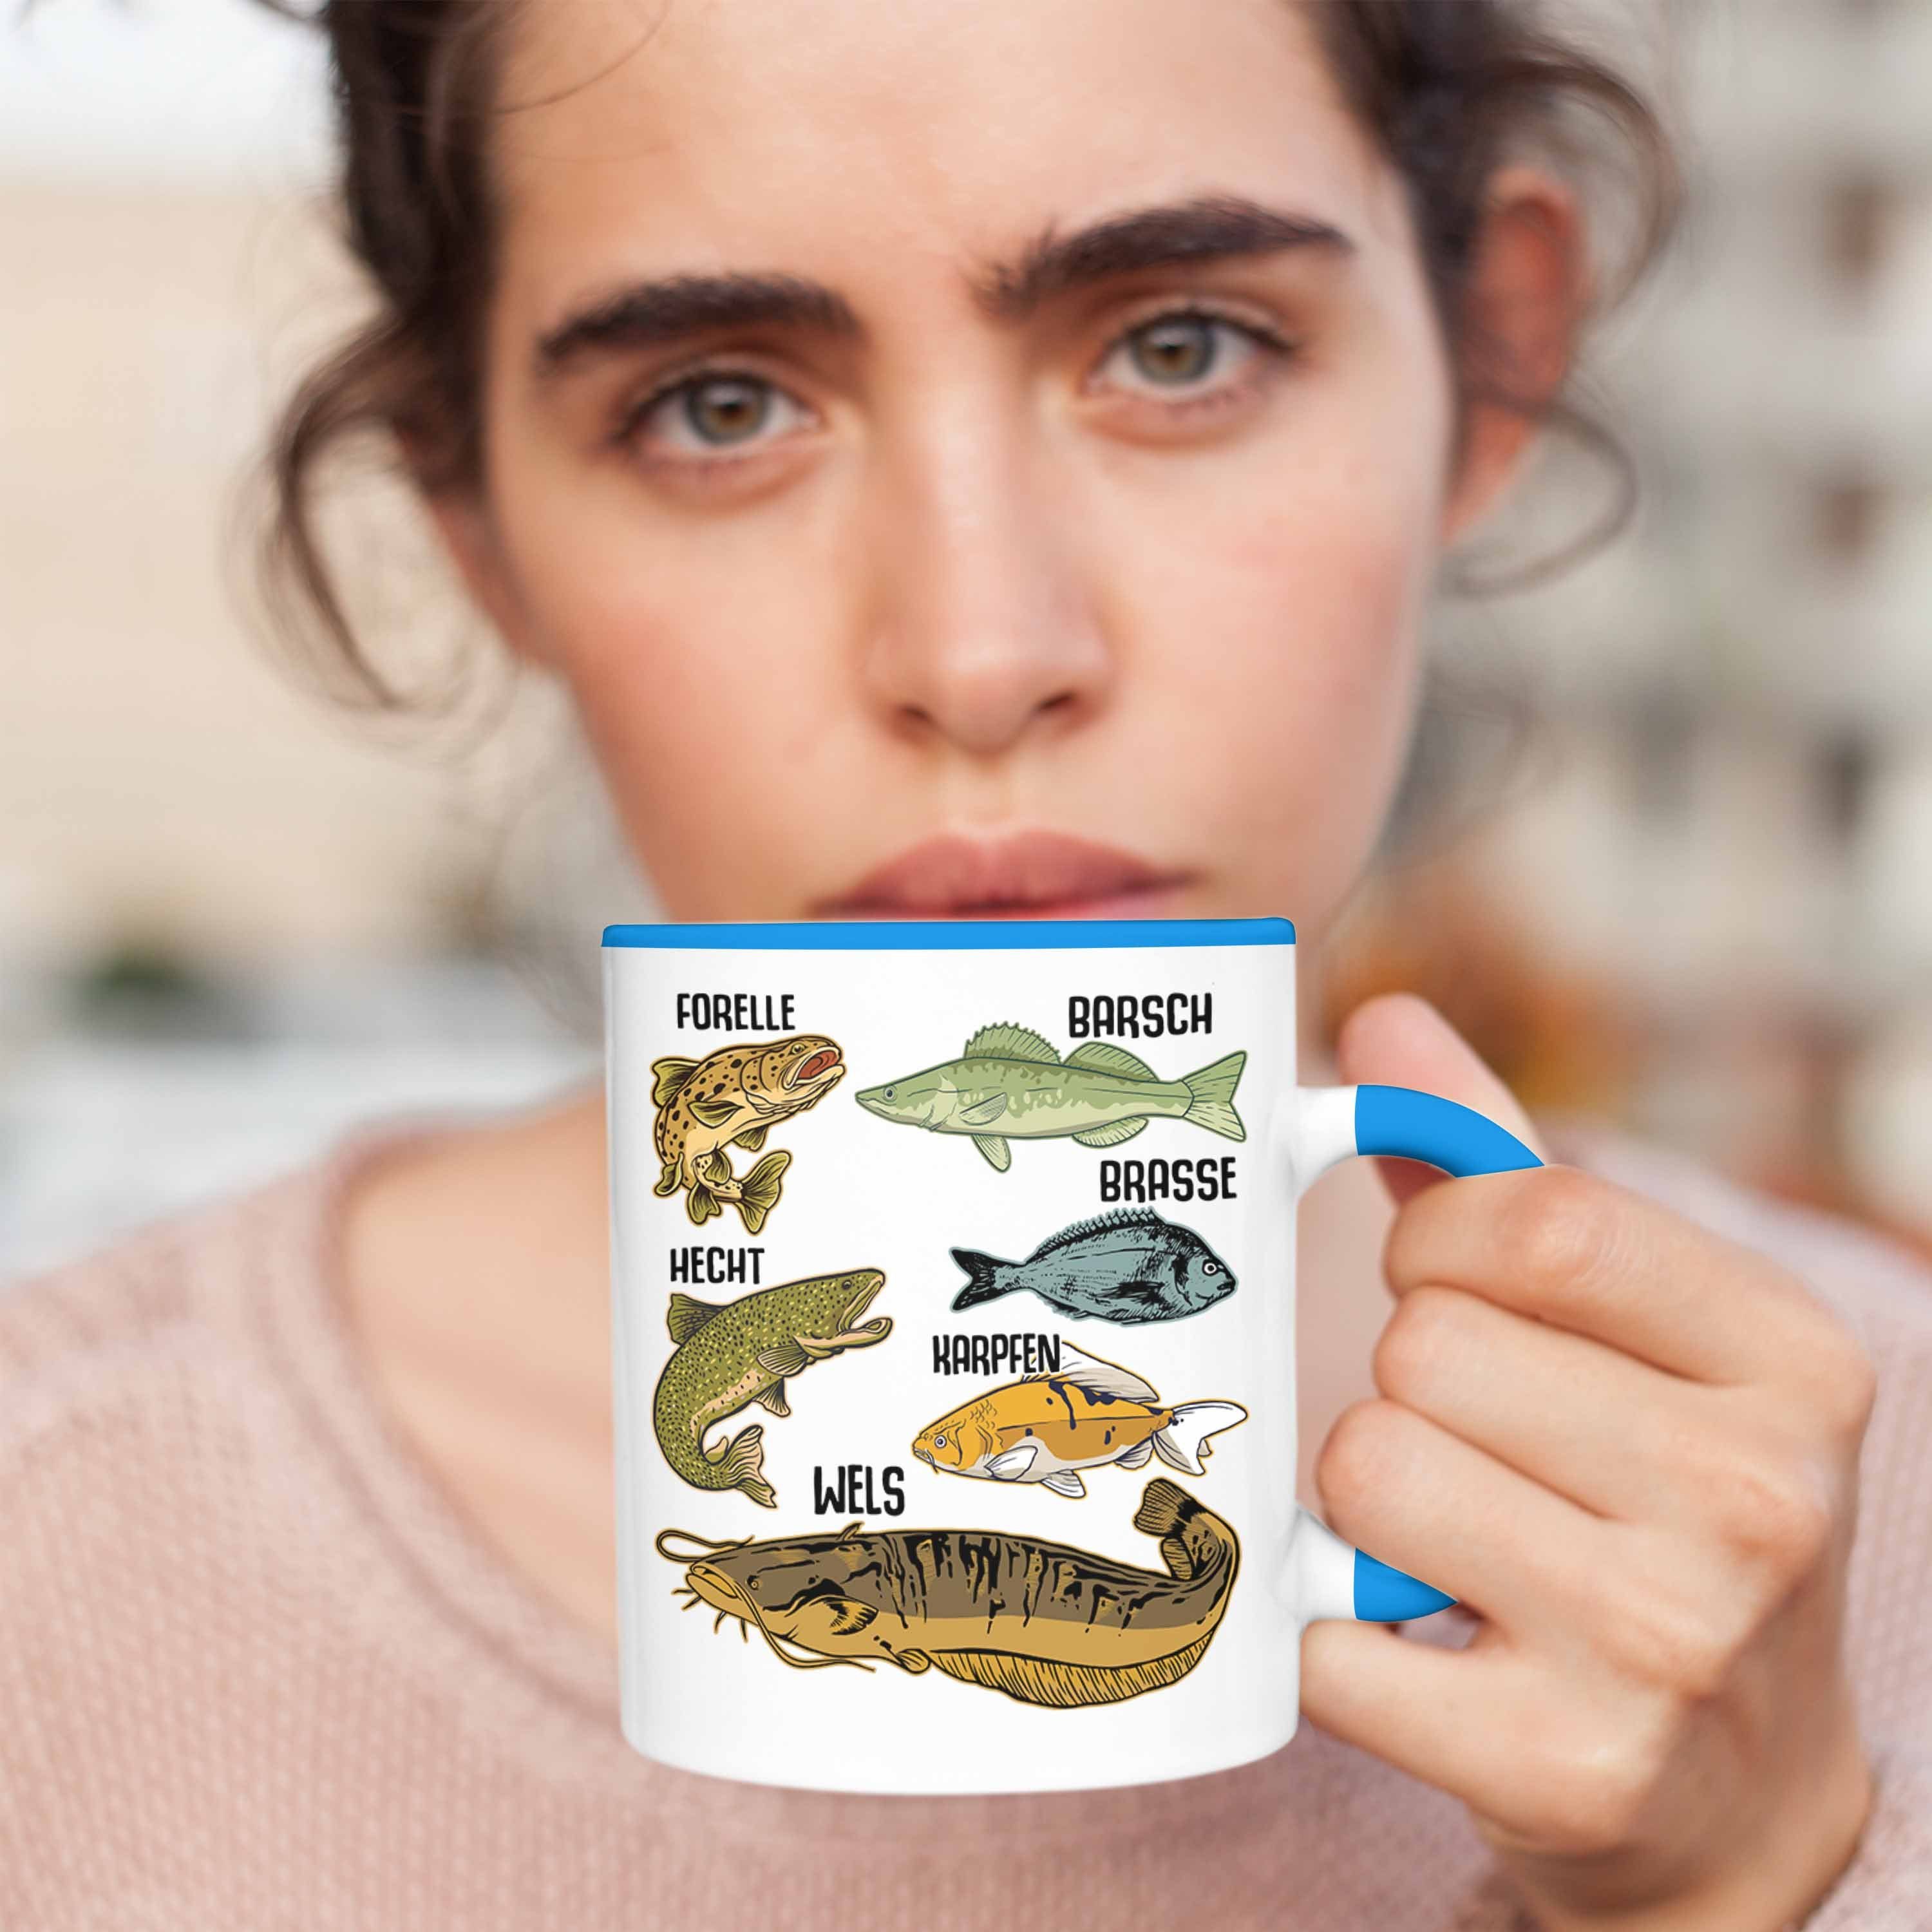 Trendation Tasse Trendation mit Blau - Raubfische Fischarten Barsch Geschenk Hecht Forelle Kaffeetasse Angeln Angler Hobbyangler Tasse Fischer